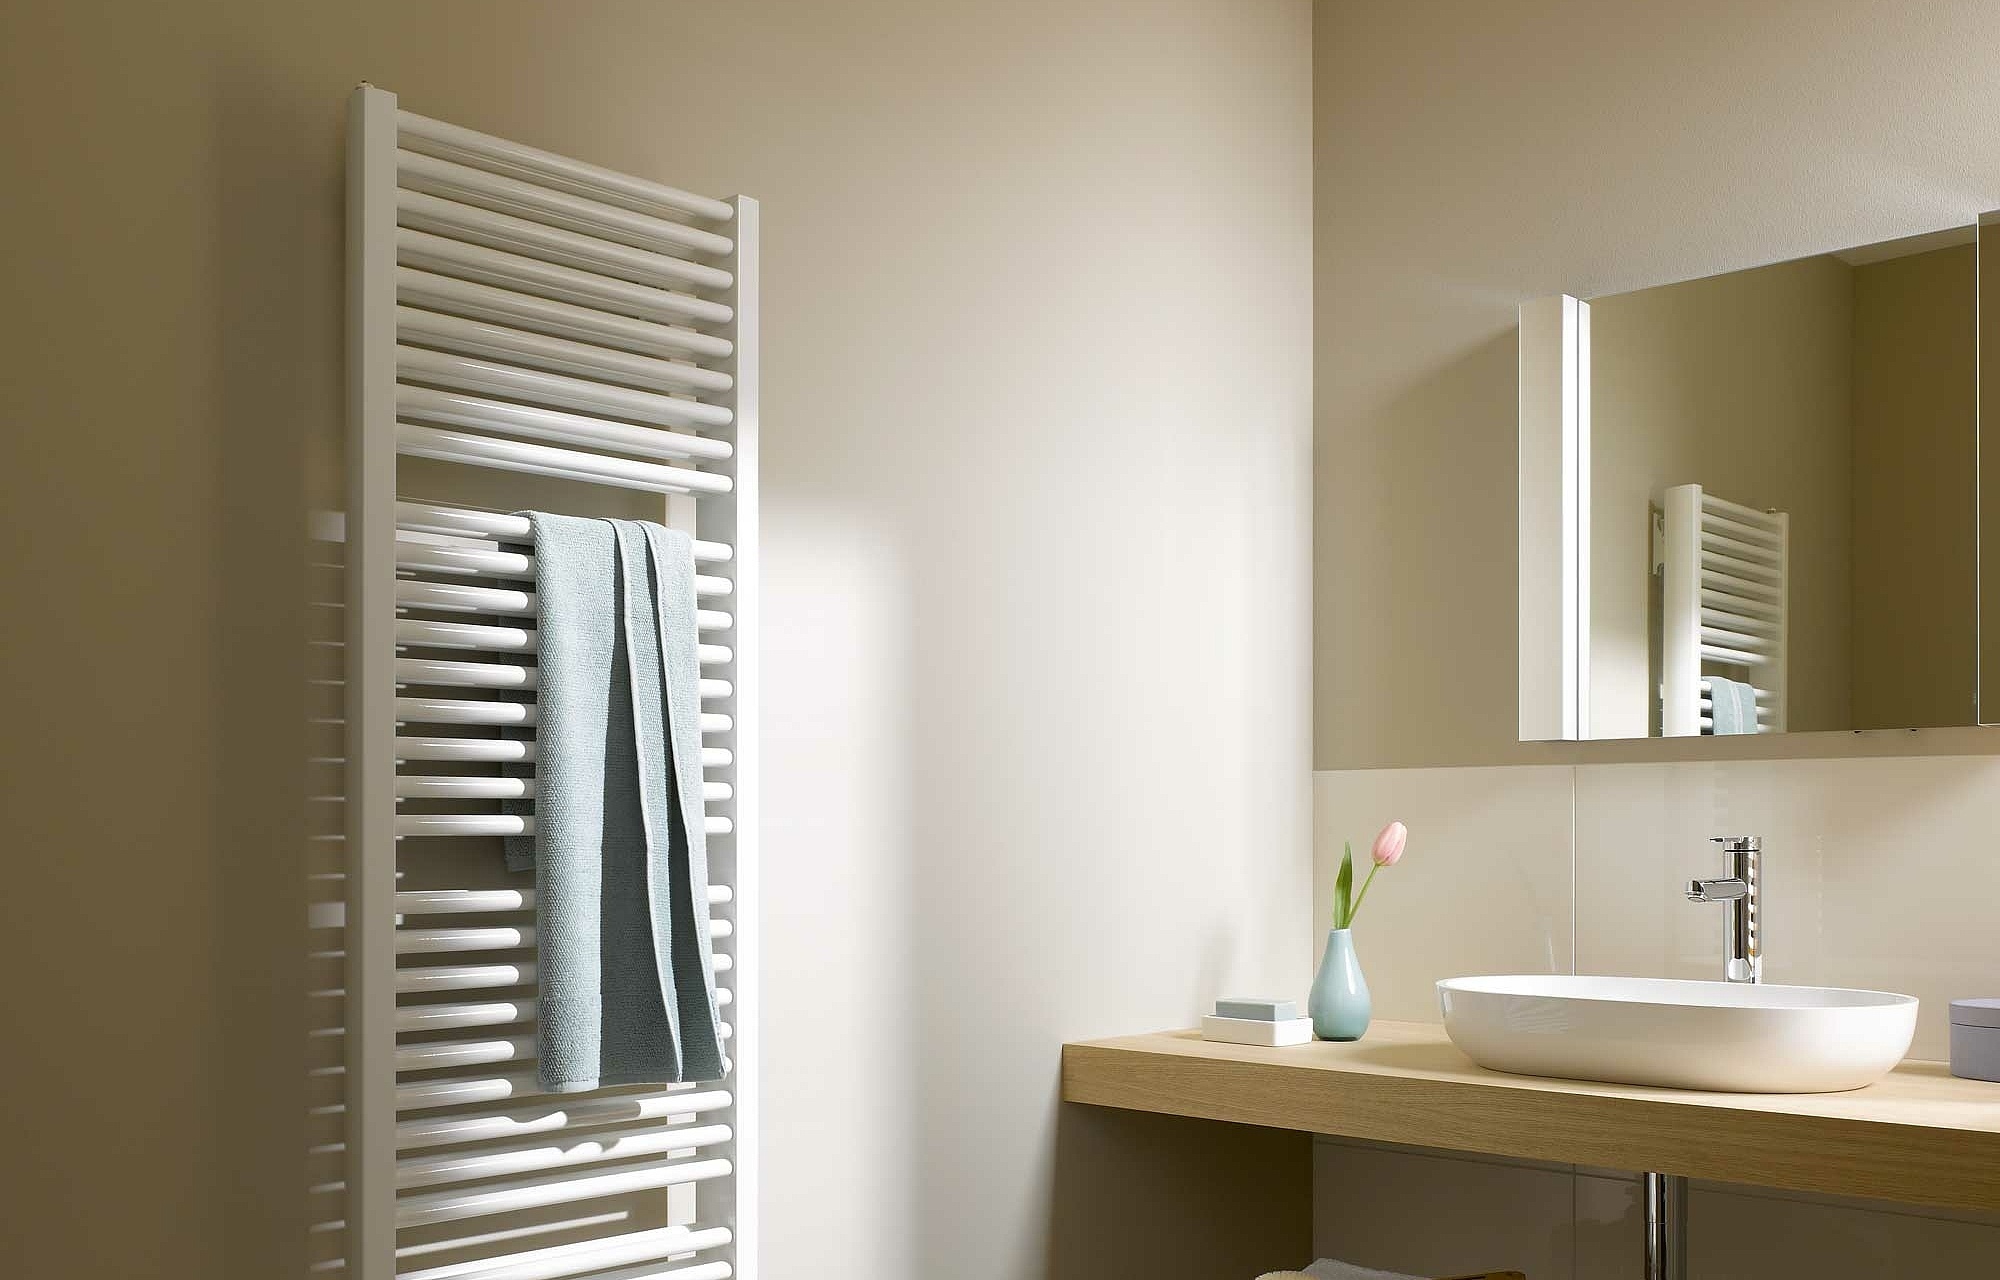 Grzejniki dekoracyjne i łazienkowe Kermi Duett oferują szerokie spektrum wielkości konstrukcyjnych i liczne opcje kolorów.